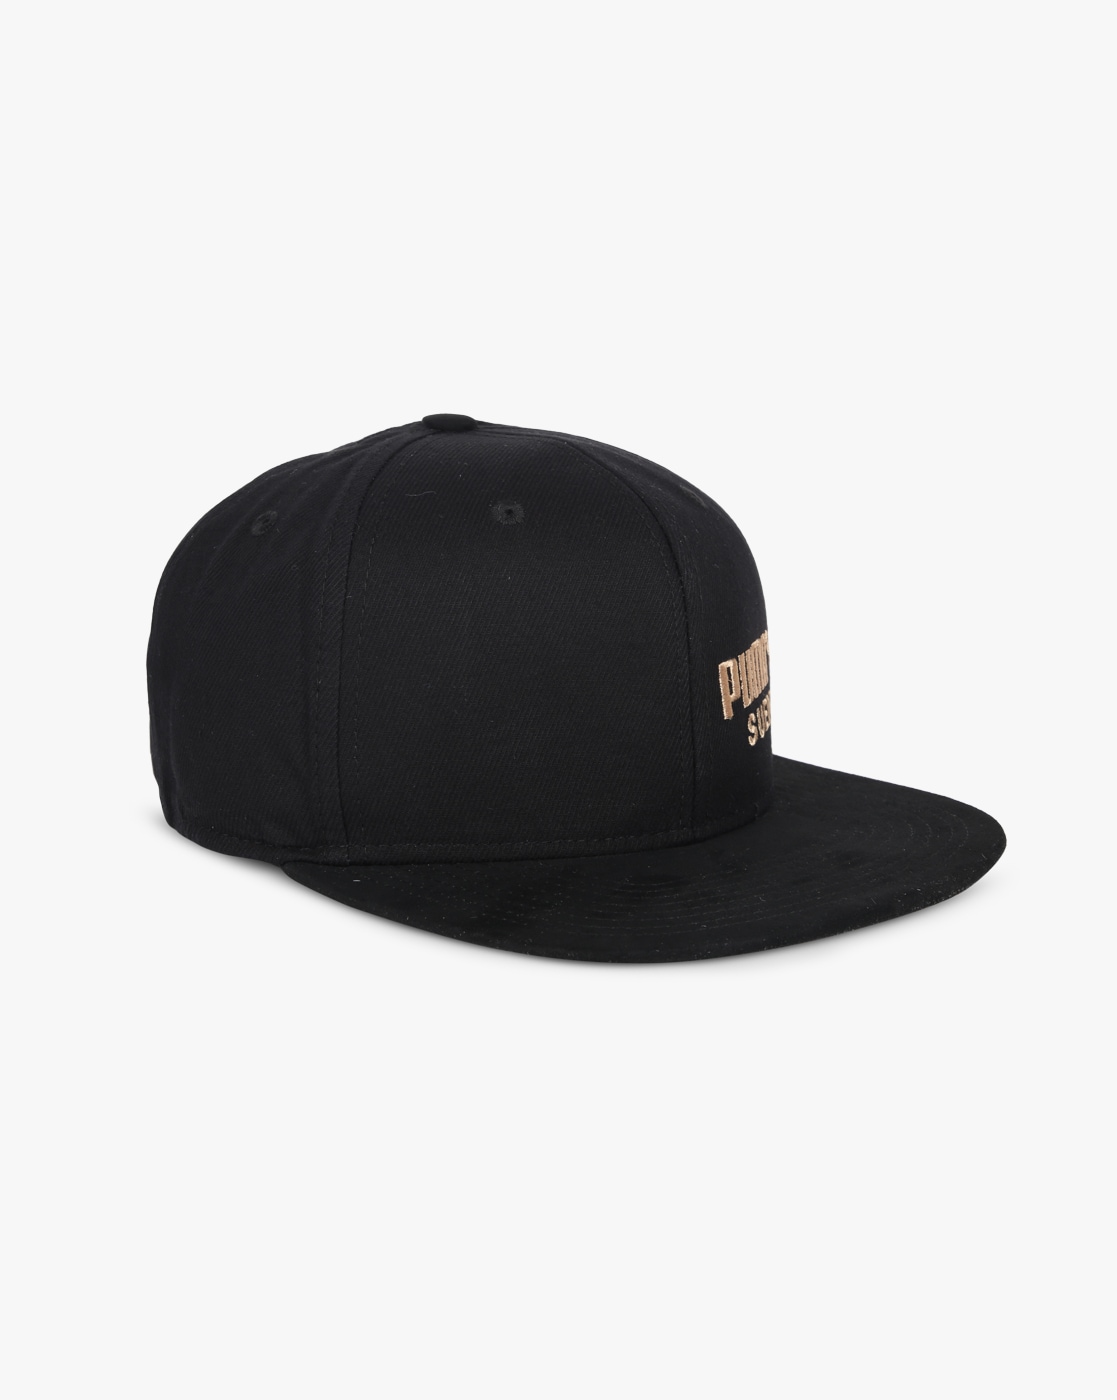 uno Ganar Personal Buy Black Caps & Hats for Men by Puma Online | Ajio.com